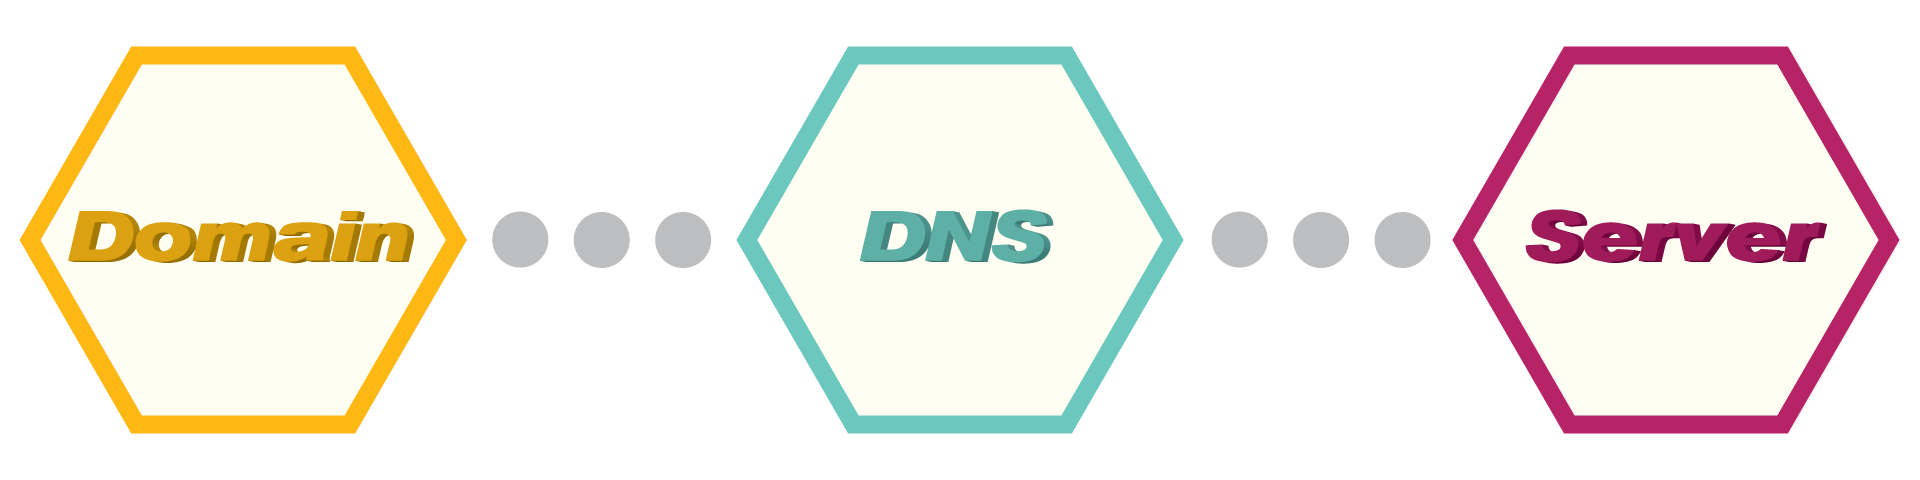 Domain DNS Server